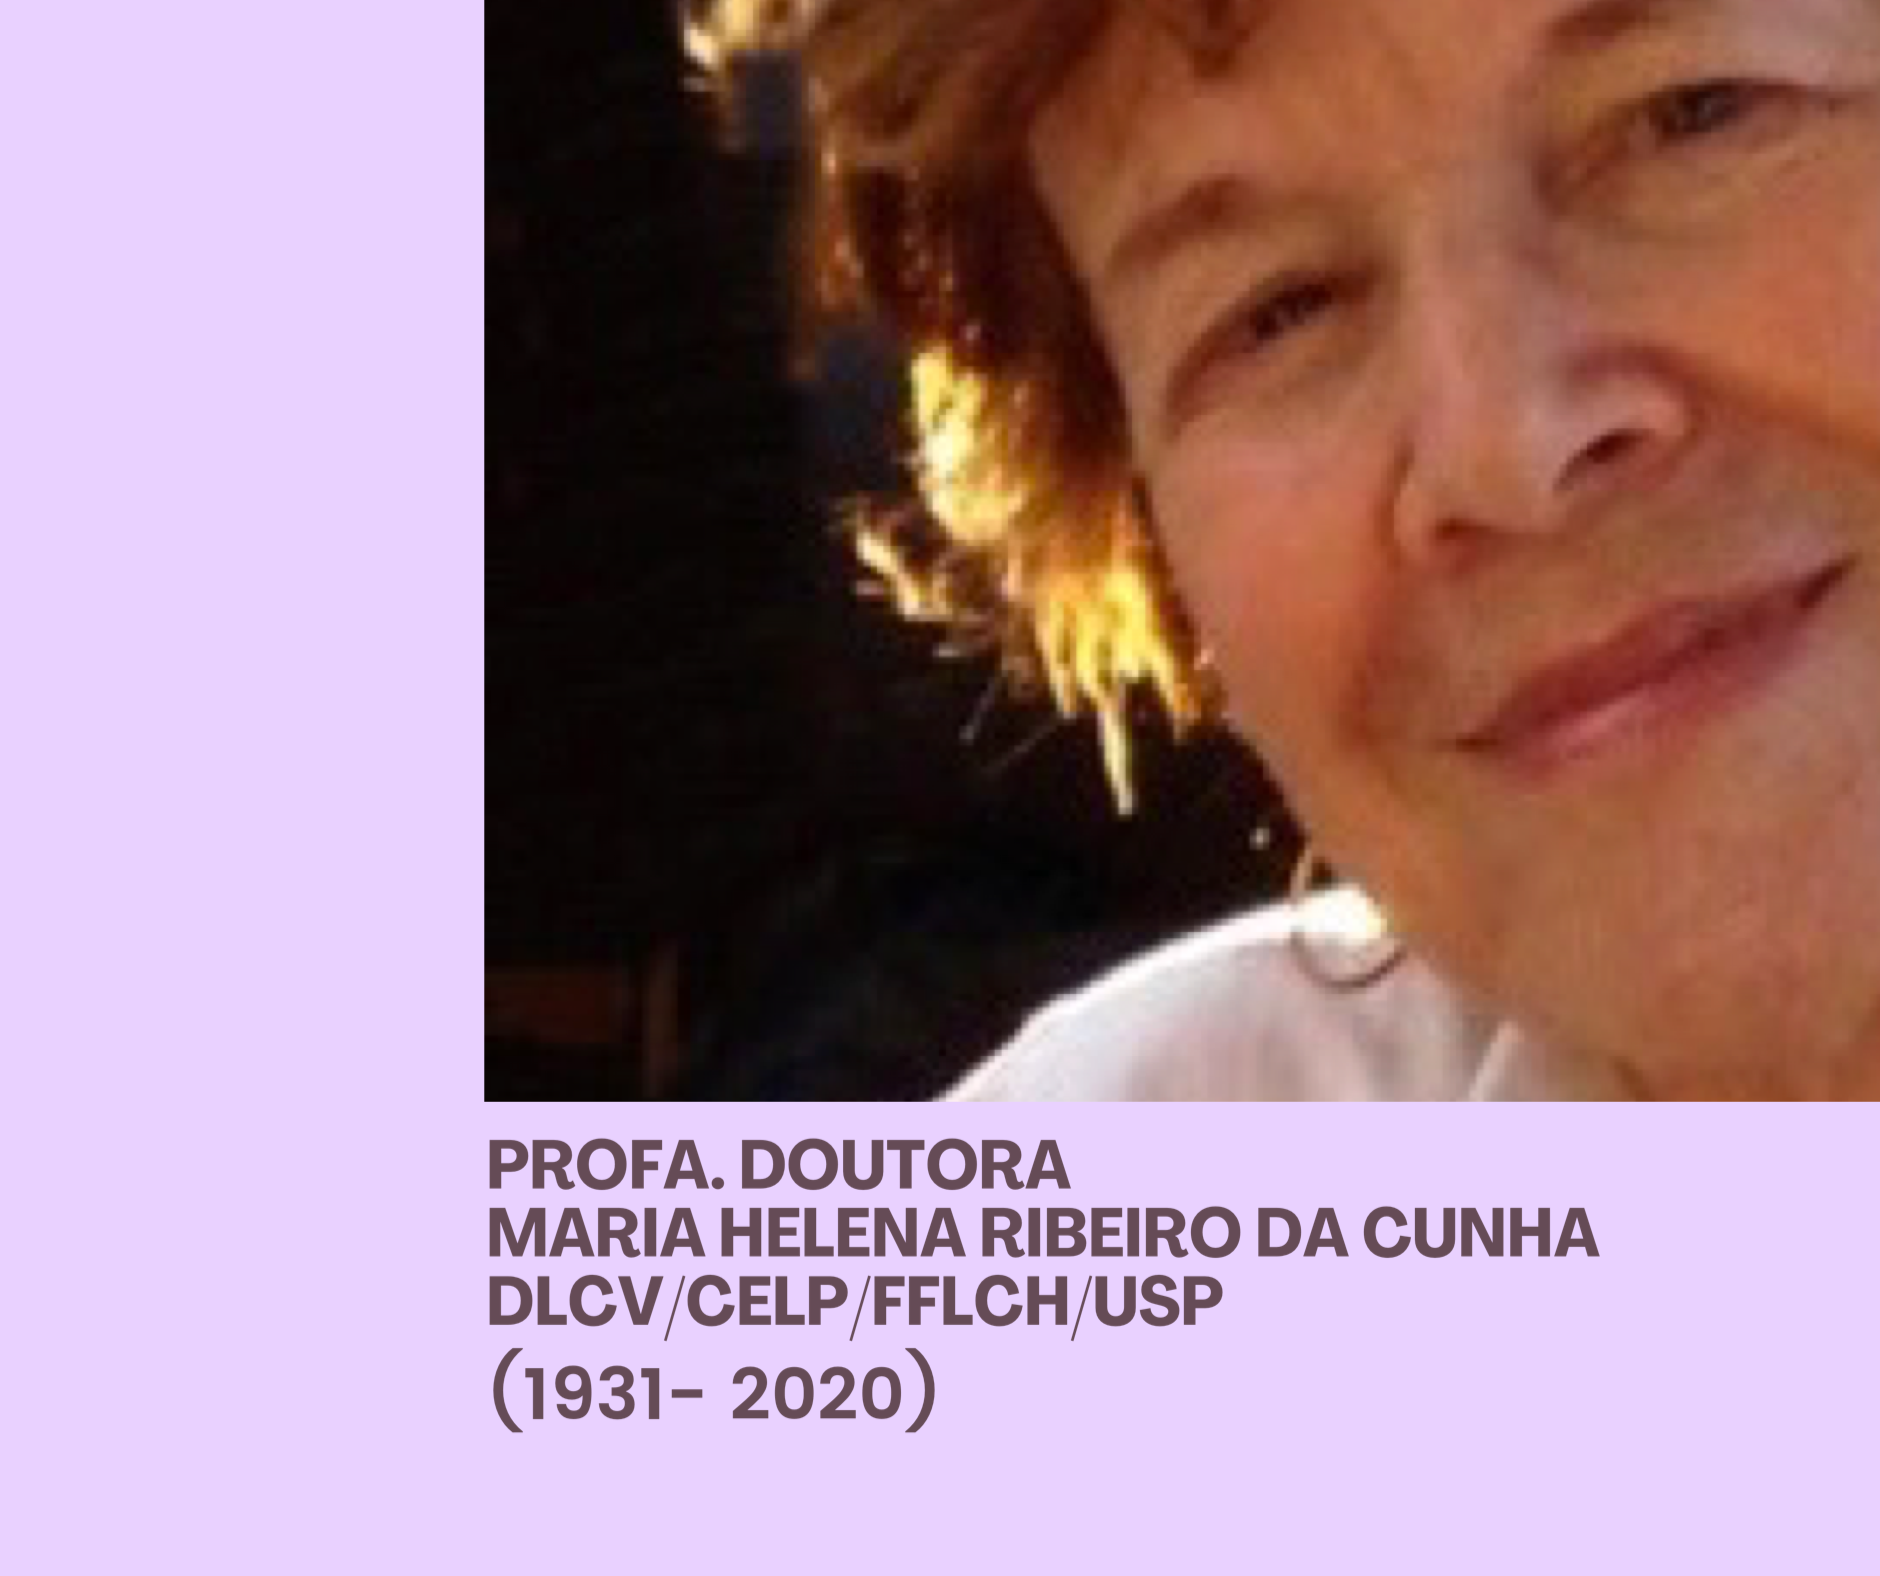 Maria Helena Ribeiro da Cunha (1931 - 2020)